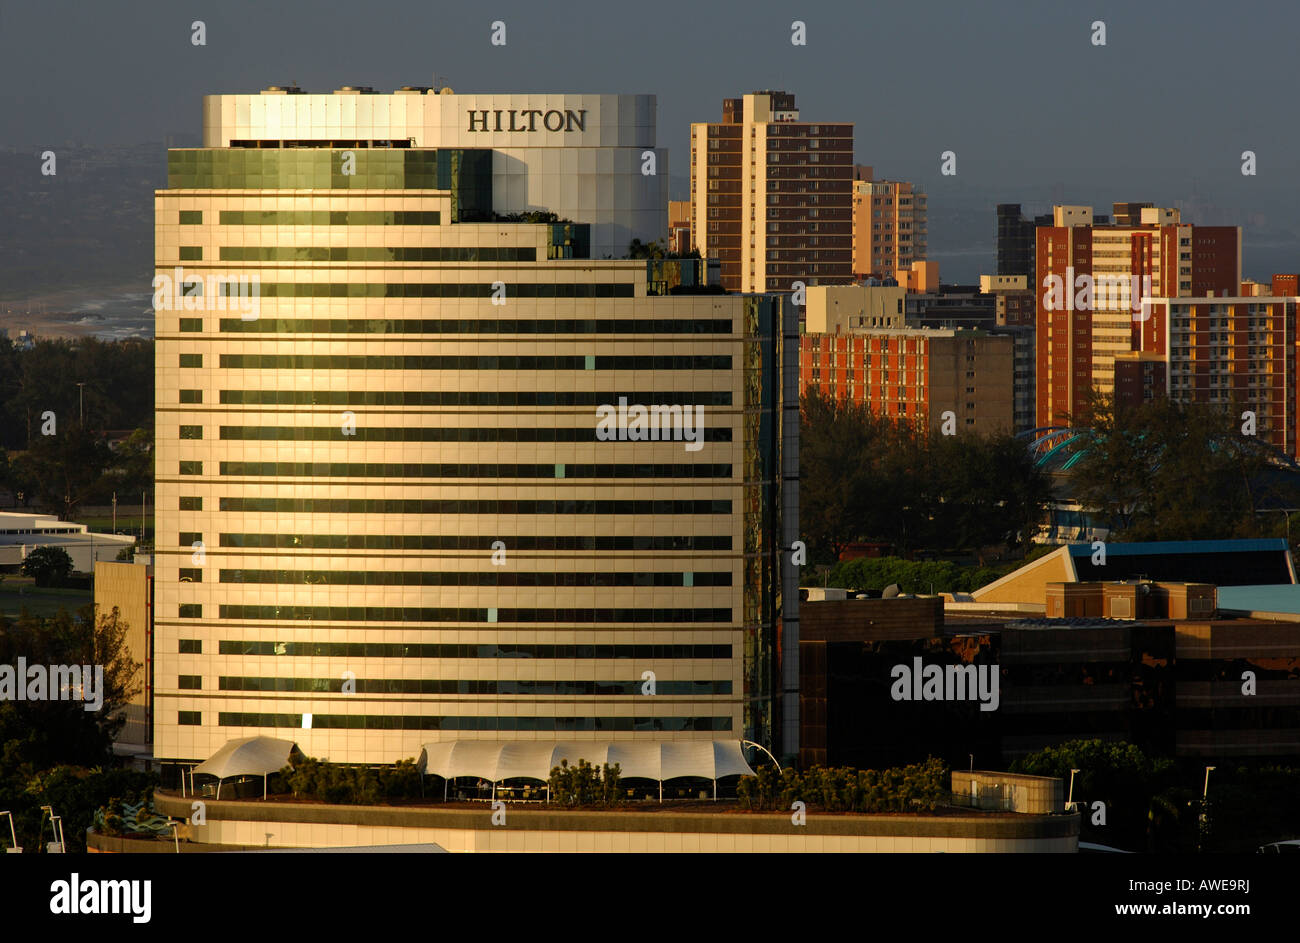 Hôtel Hilton Durban dans le soleil du soir, Durban, Afrique du Sud Banque D'Images